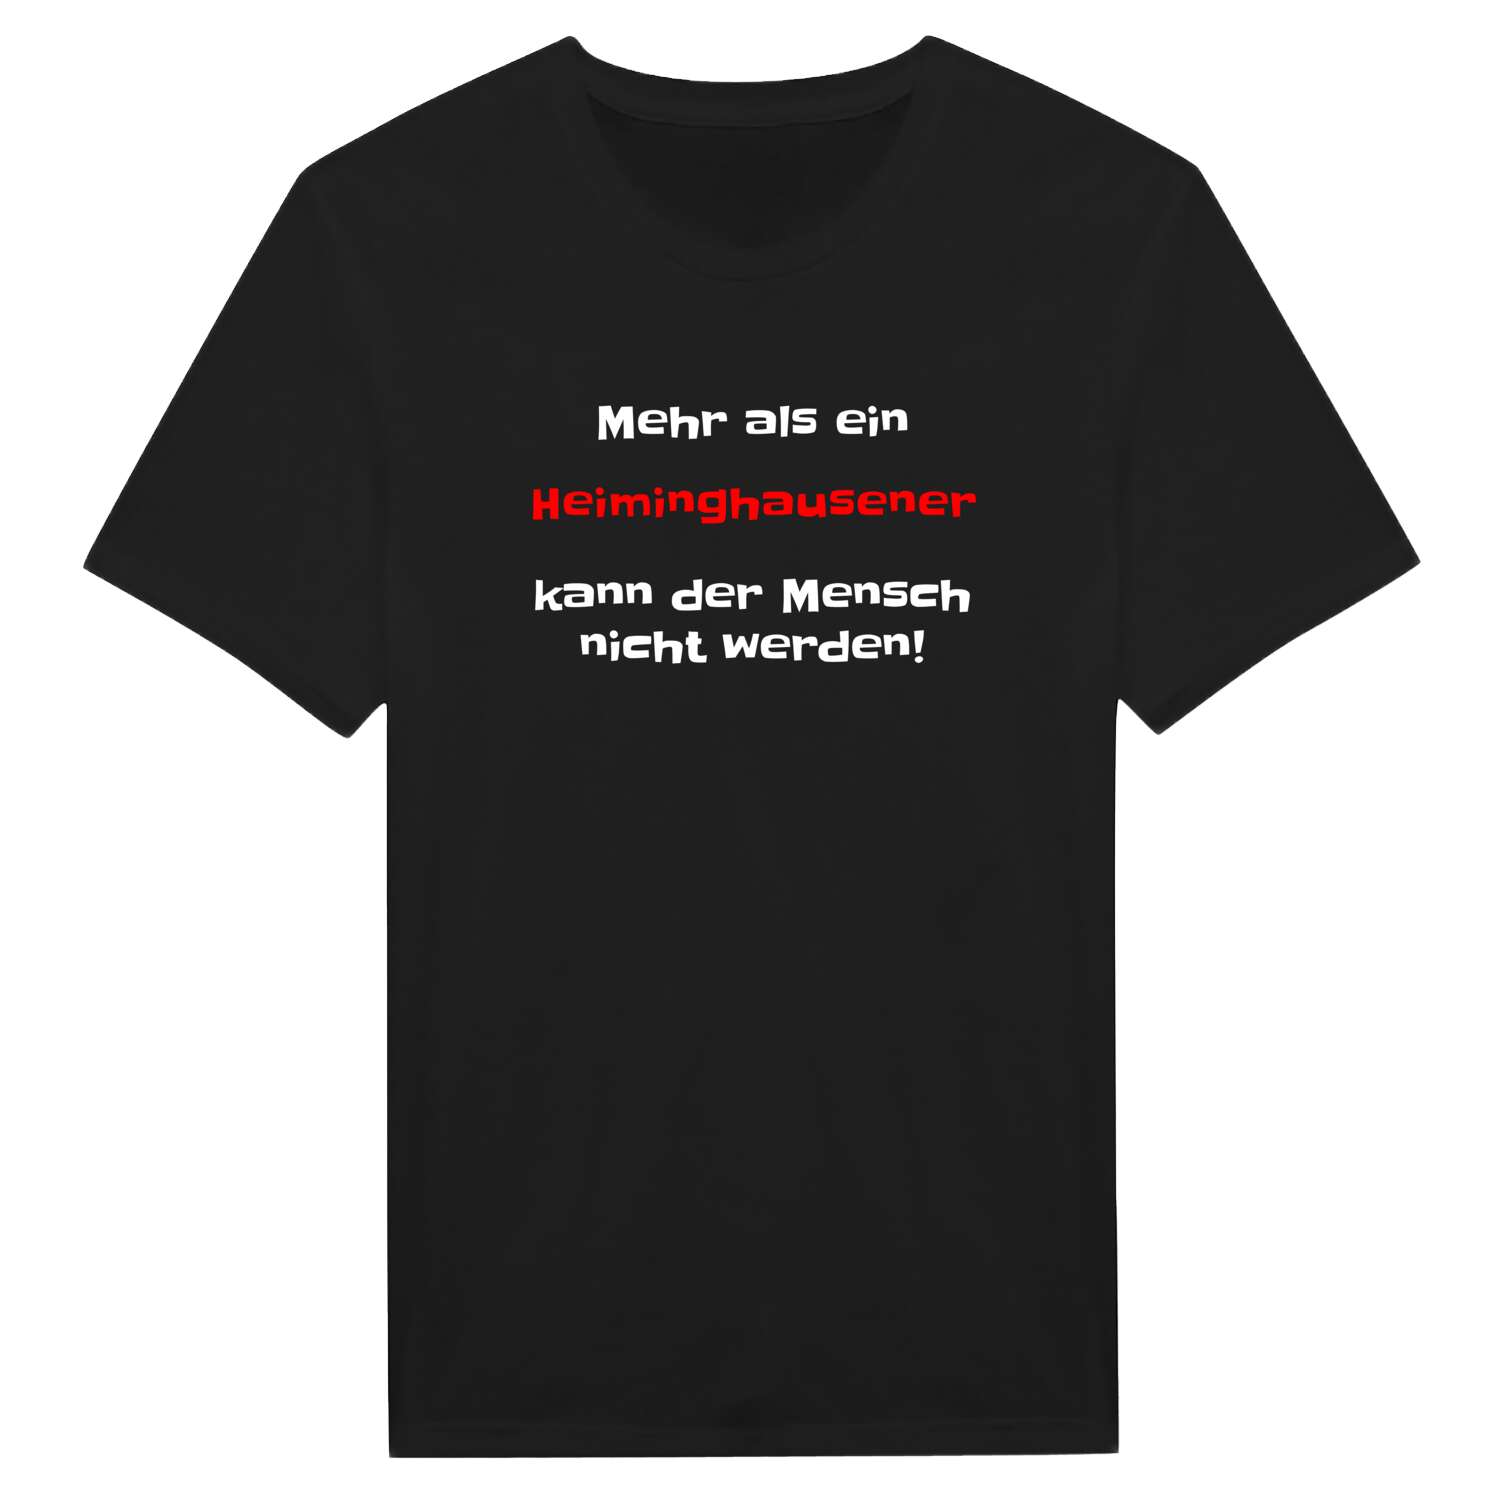 Heiminghausen T-Shirt »Mehr als ein«